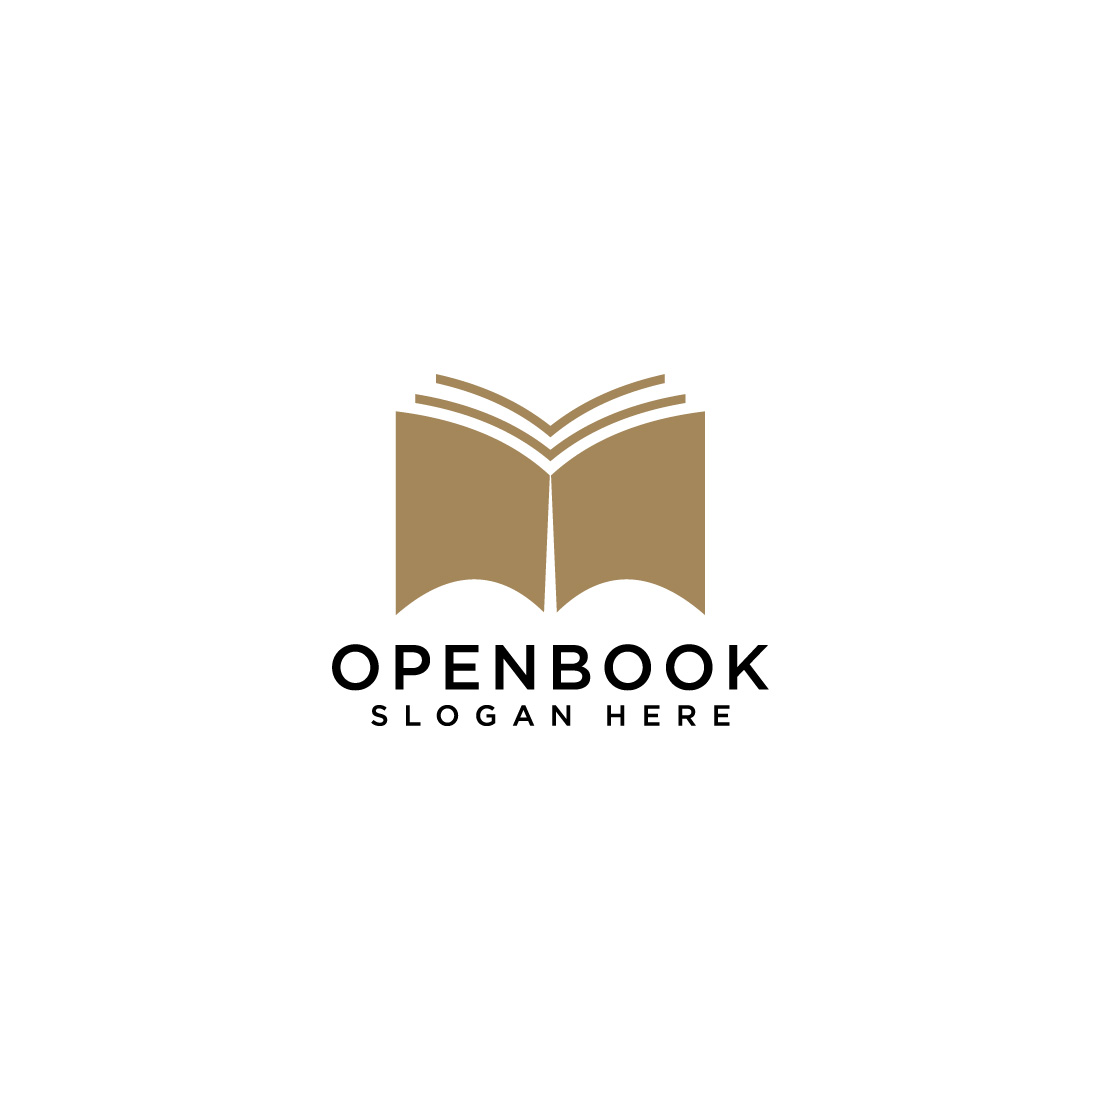 open book logo vector design template cover image.